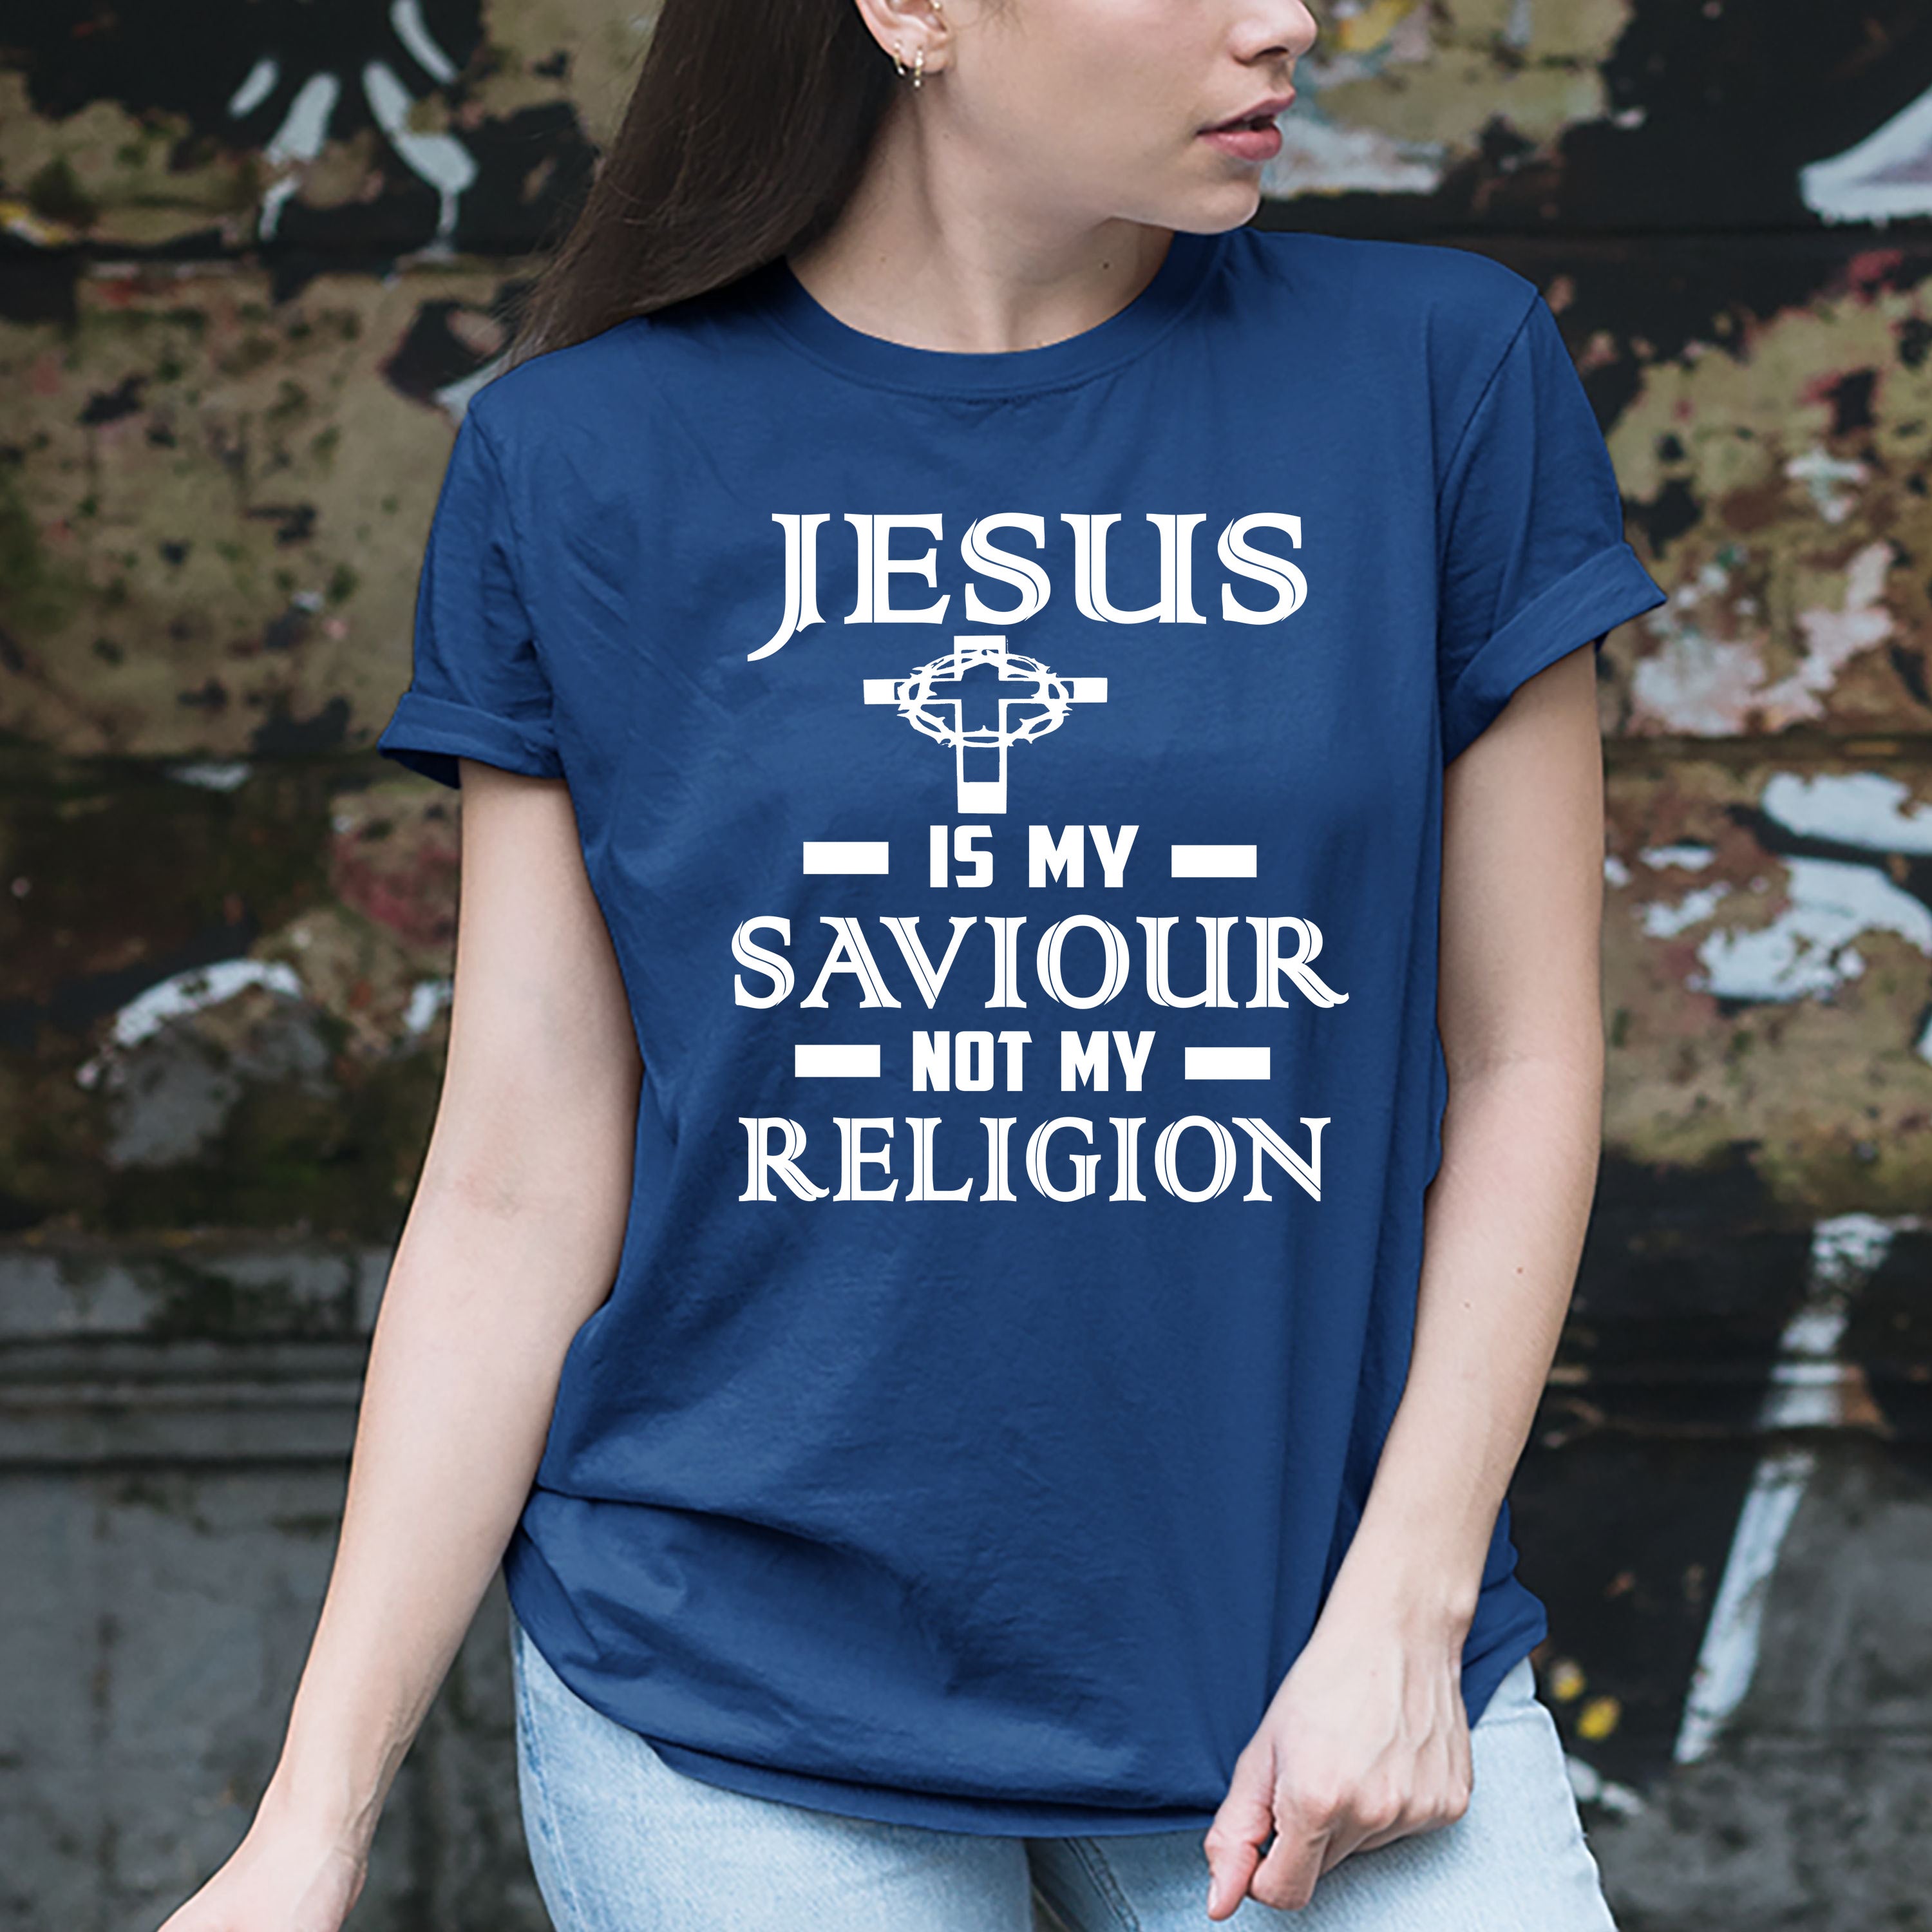 "Jesus is My Saviour Not My Religion"